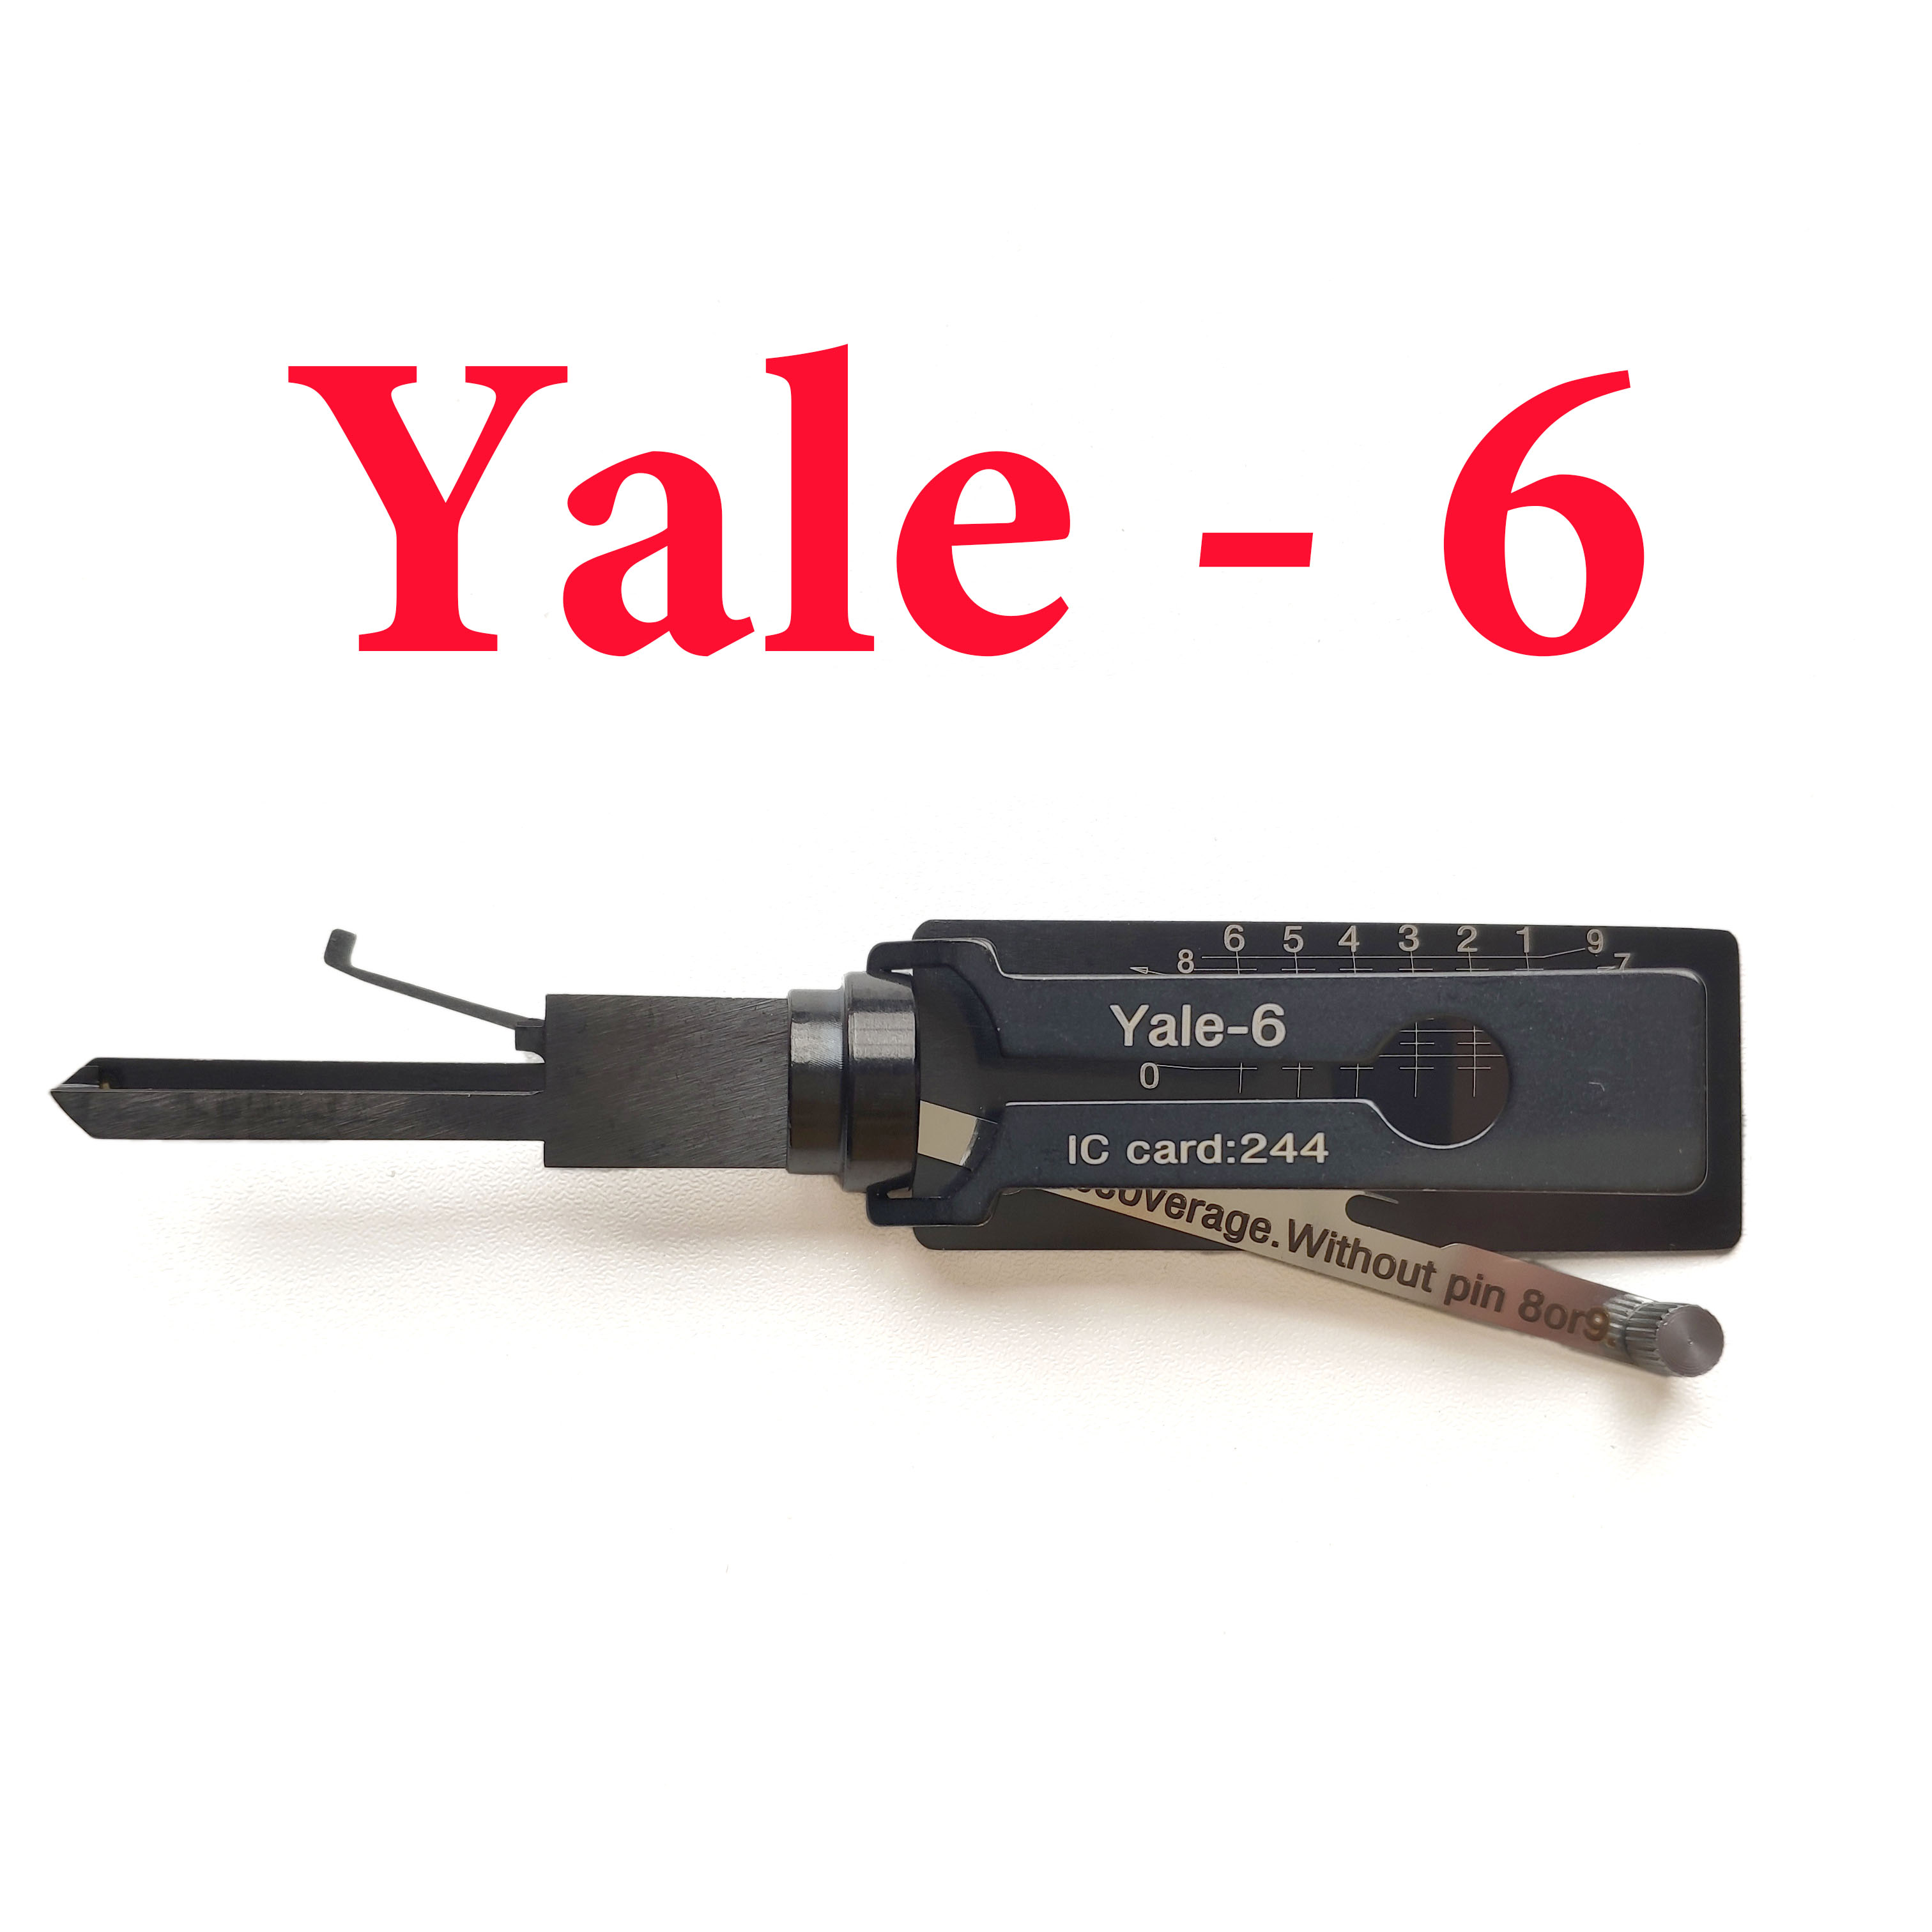 2 In 1 YALE-6 bead Key Reader Auto Locksmith Tools